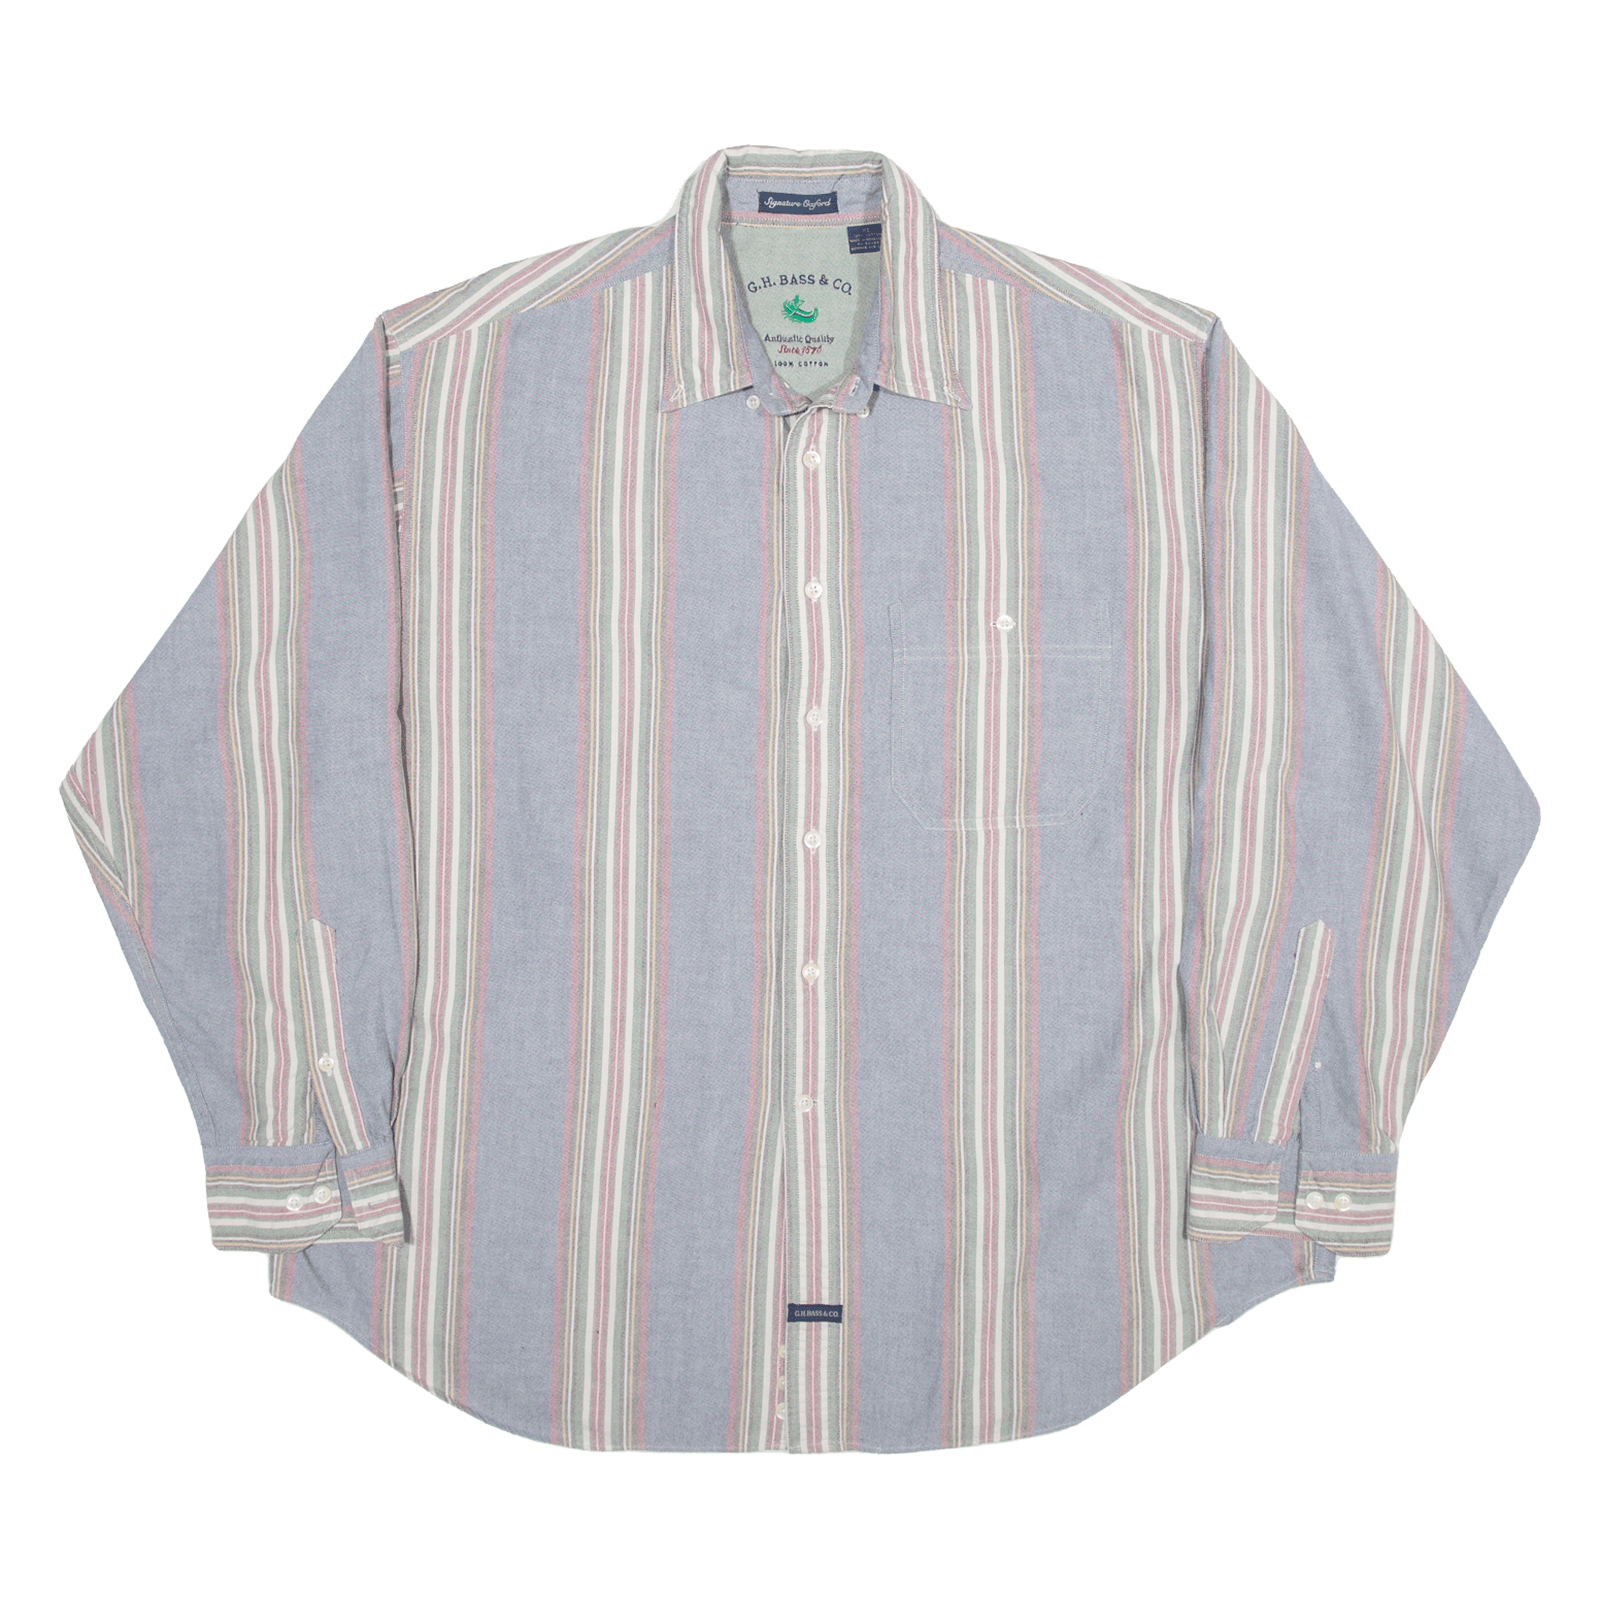 G. H. Bass Shirt Blue Striped Long Sleeve Mens XL